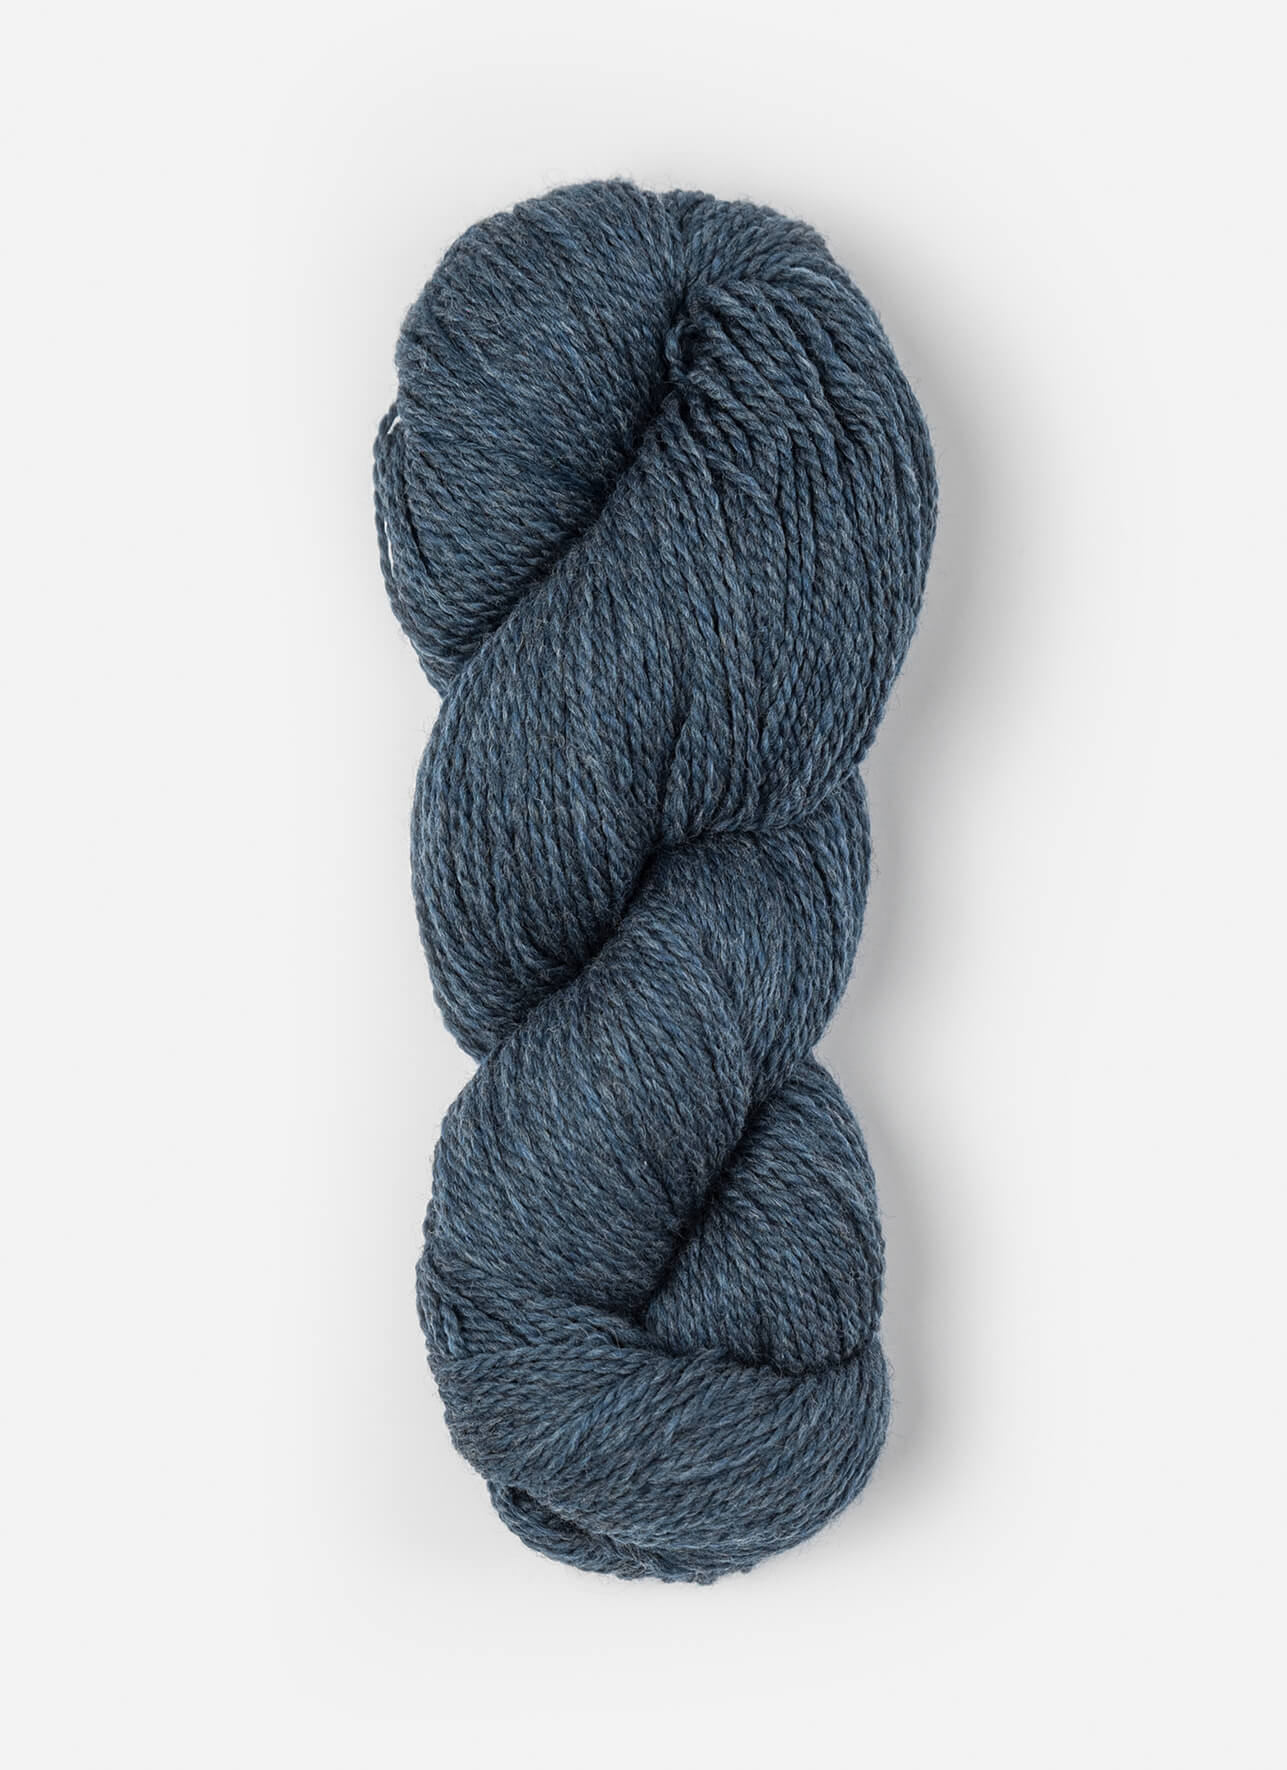 Blue Sky Fibers Woolstok 150 gram wool yarn color 1305